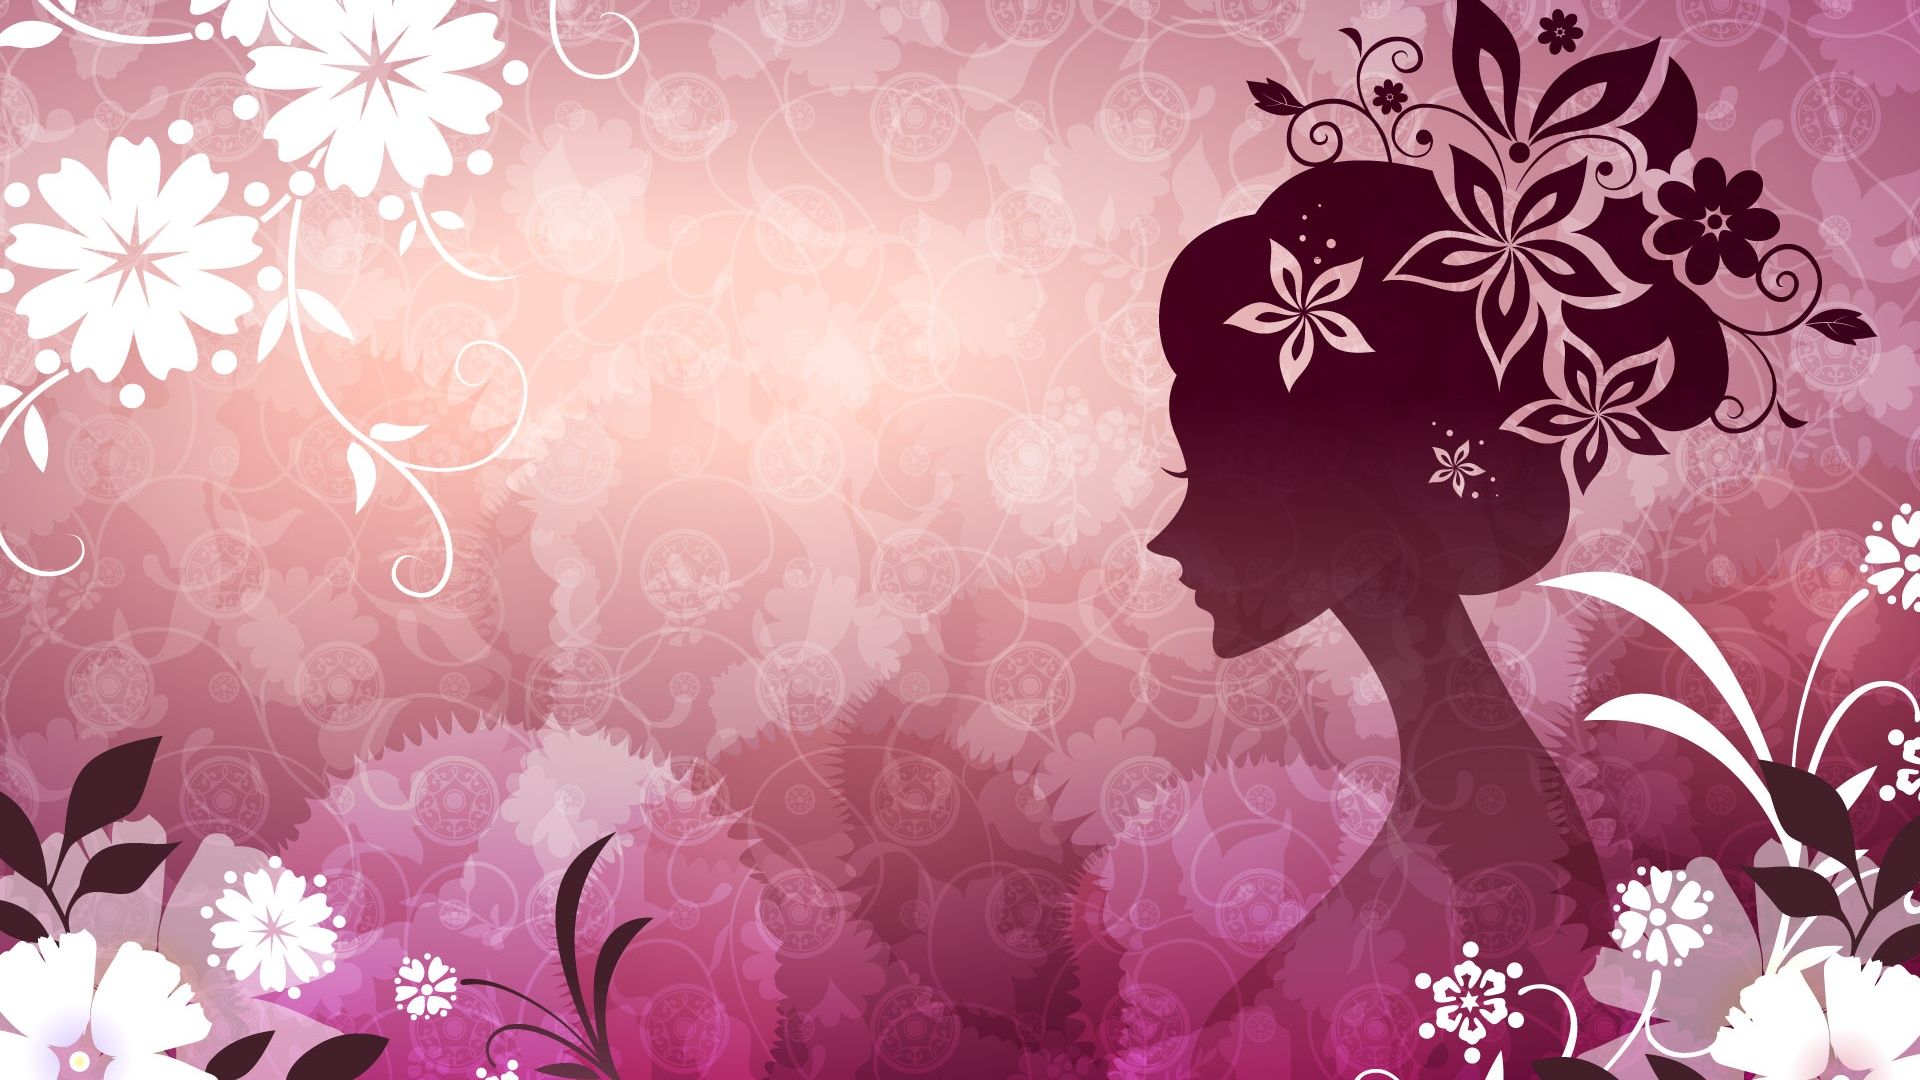 Art Wallpaper Flower Woman 3 Wallpaper Image For Girls HD Wallpaper